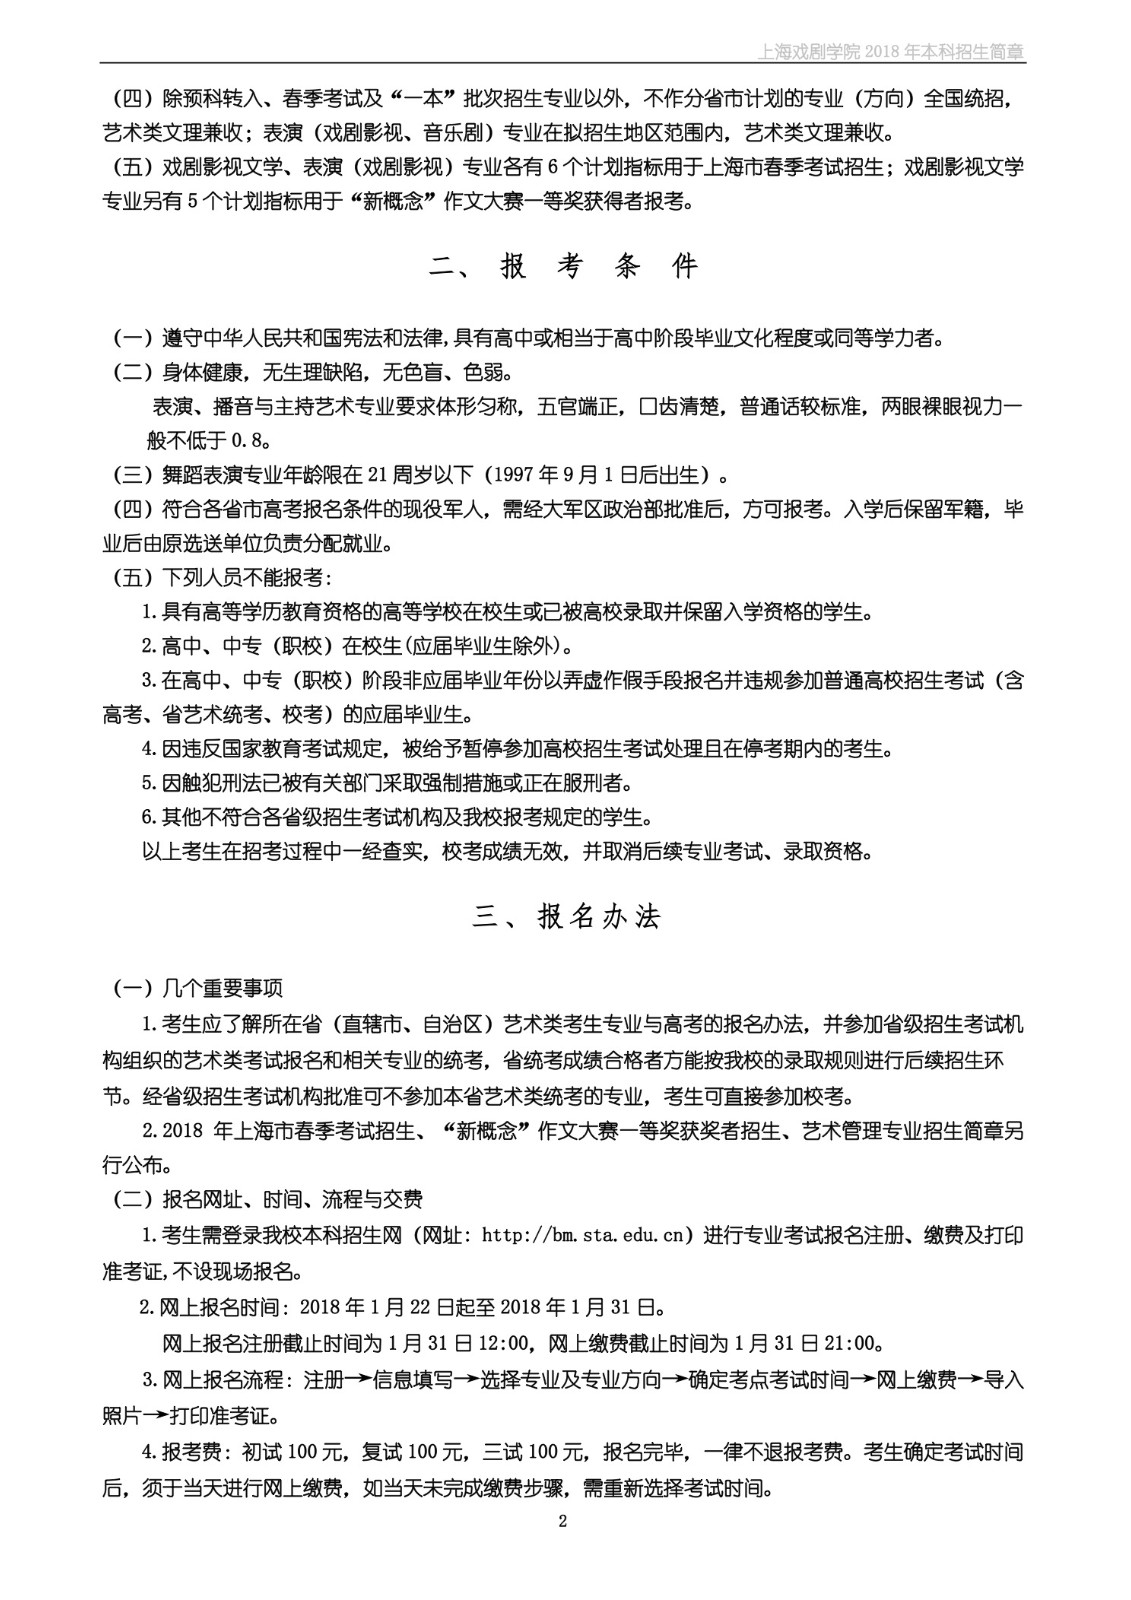 上海戏剧学院2018年本科招生简章-page2.jpeg